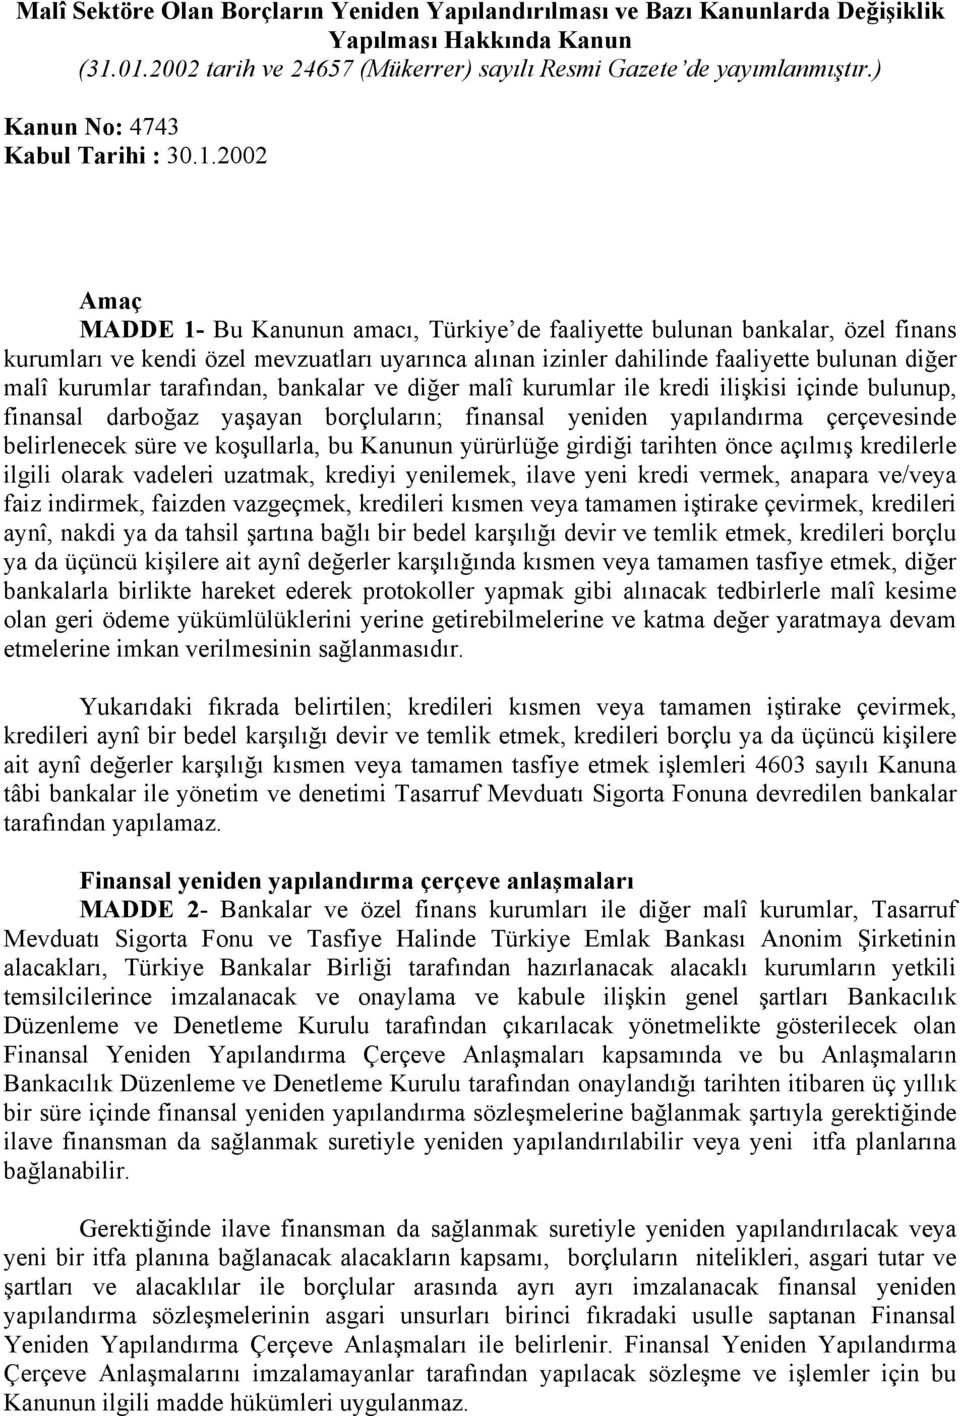 2002 Amaç MADDE 1- Bu Kanunun amacı, Türkiye de faaliyette bulunan bankalar, özel finans kurumları ve kendi özel mevzuatları uyarınca alınan izinler dahilinde faaliyette bulunan diğer malî kurumlar